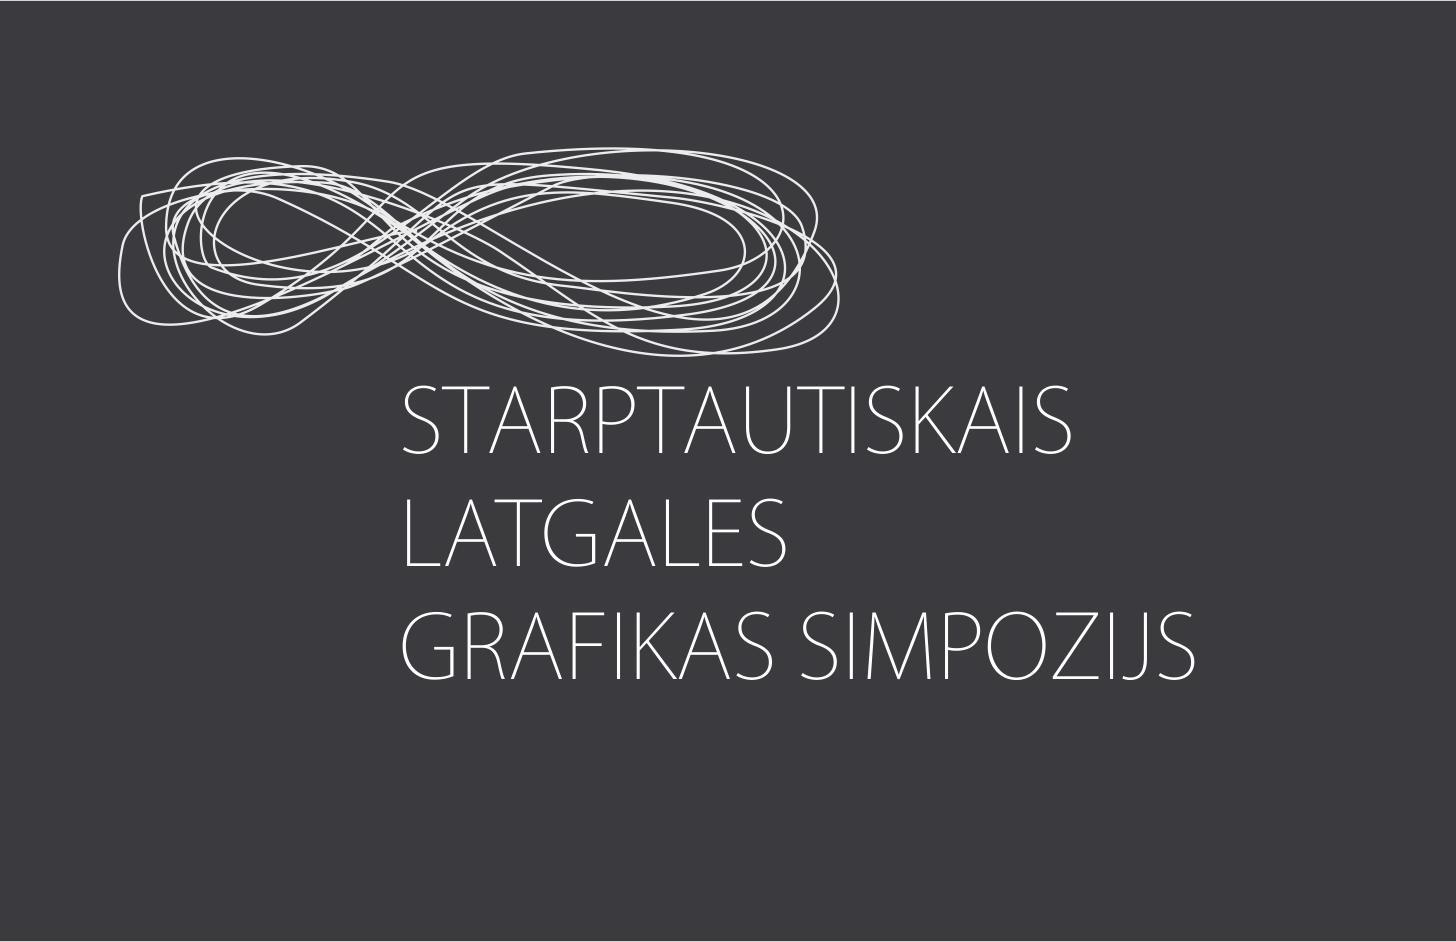 Daugavpils to host the International Latgale Graphic Art Symposium